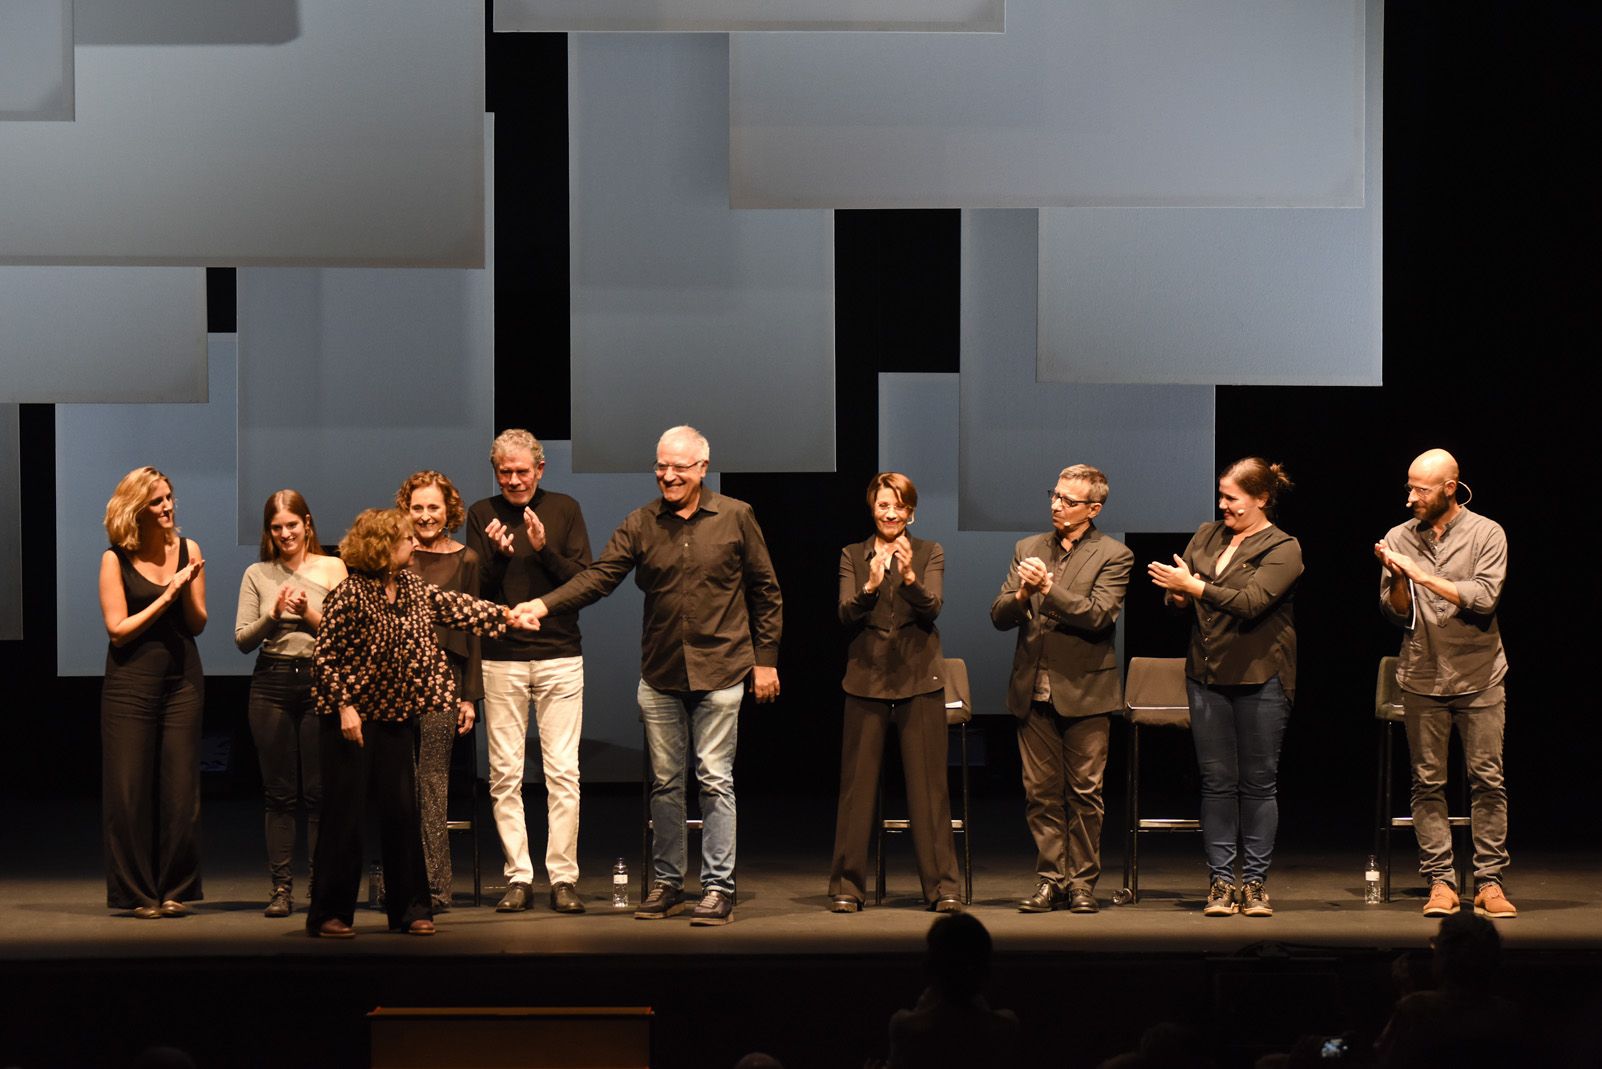 Inauguració del Festival Nacional de Poesia a Sant Cugat 2019. Foto: Bernat Millet.